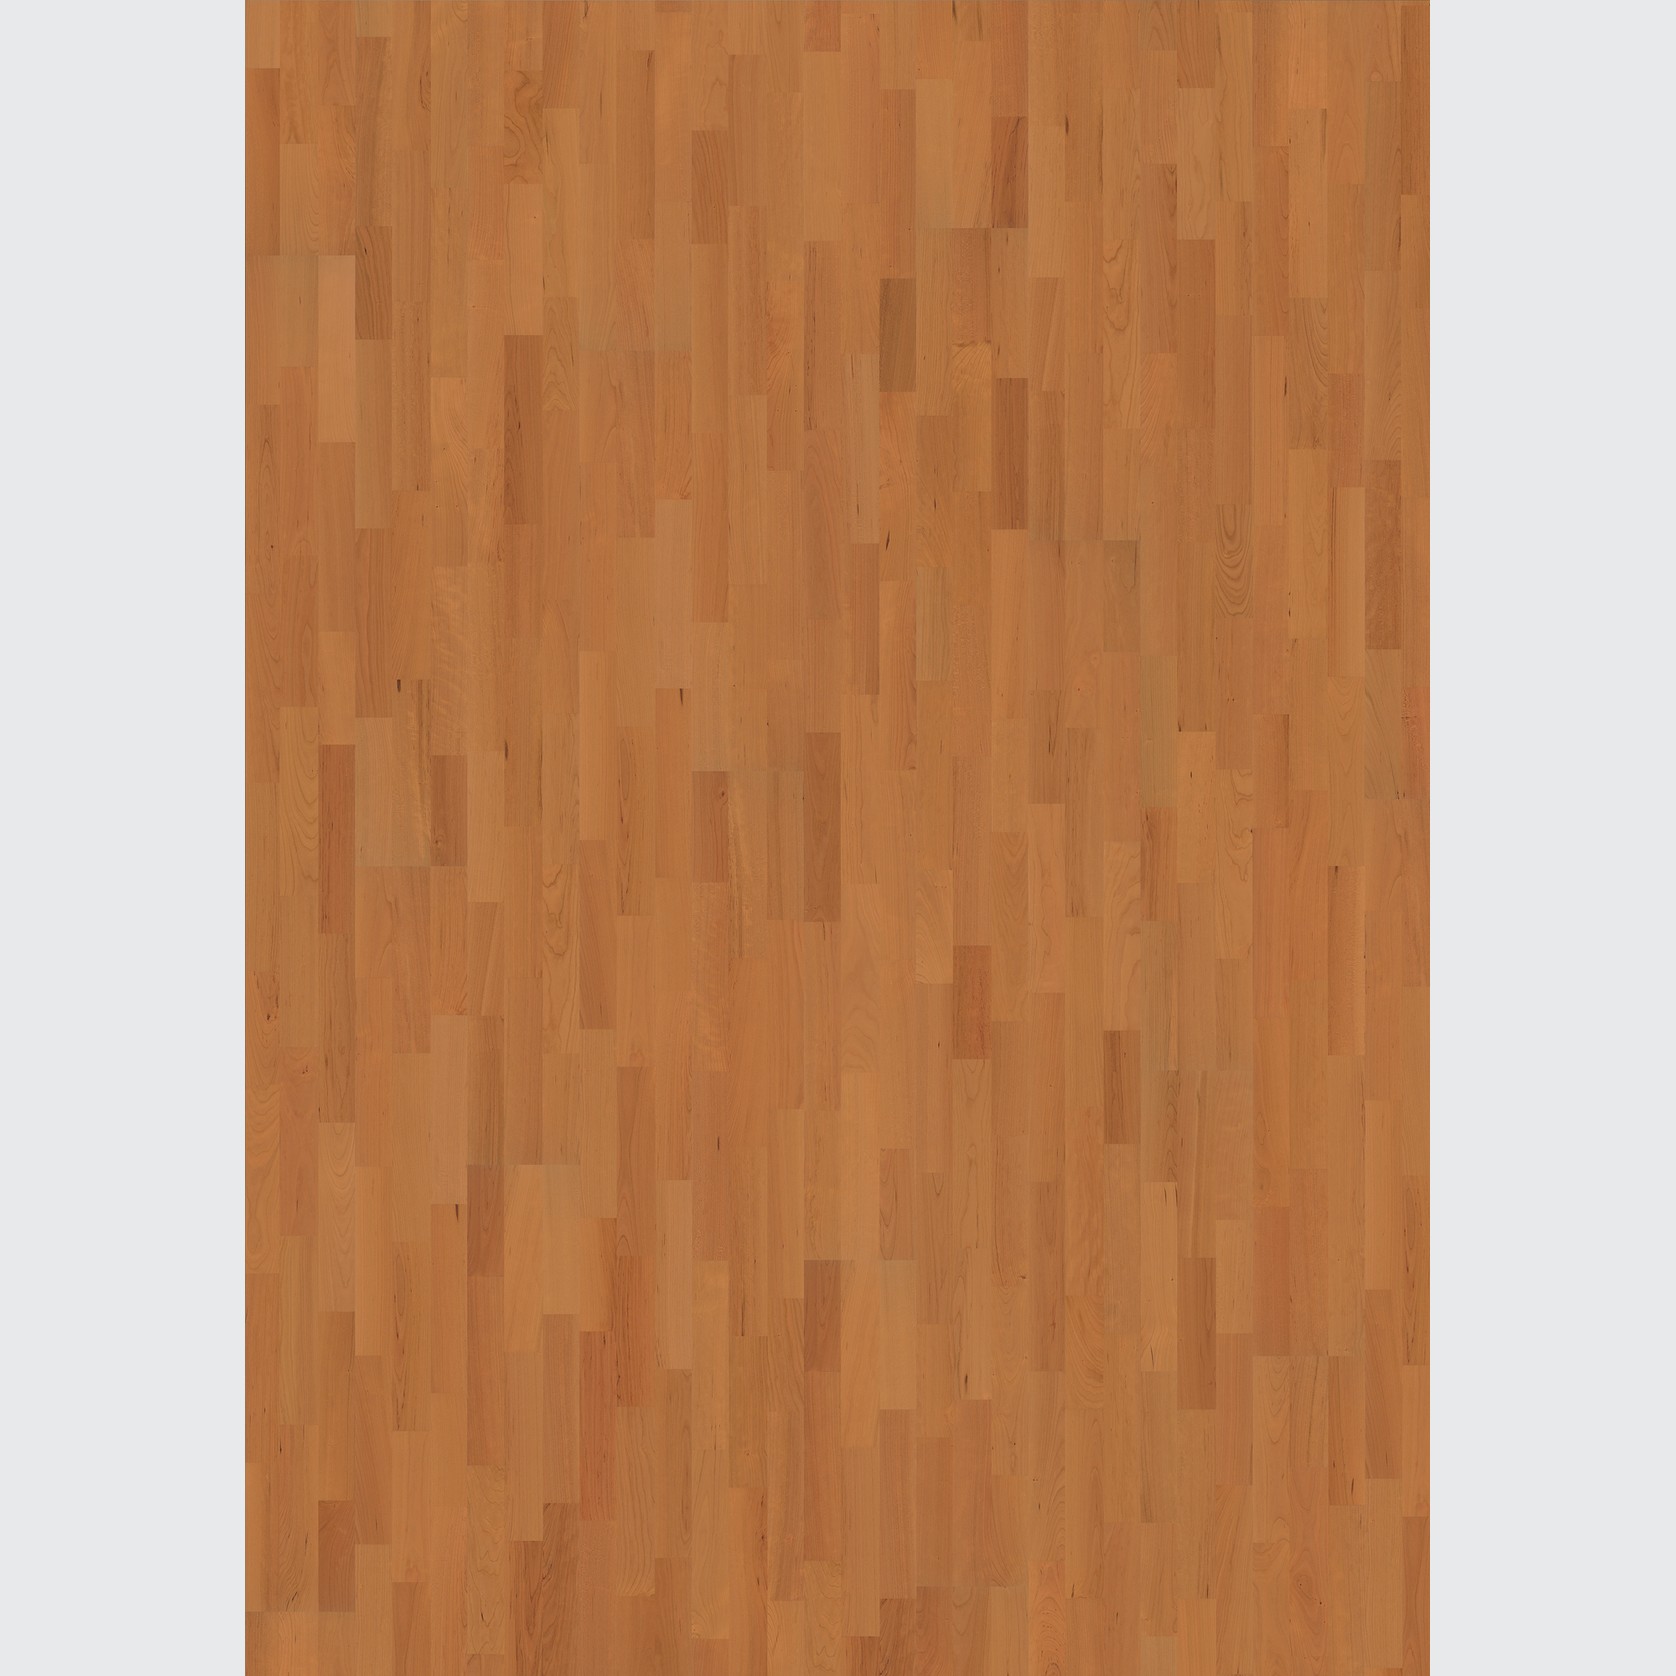 Cherry Savannah Wood Flooring gallery detail image